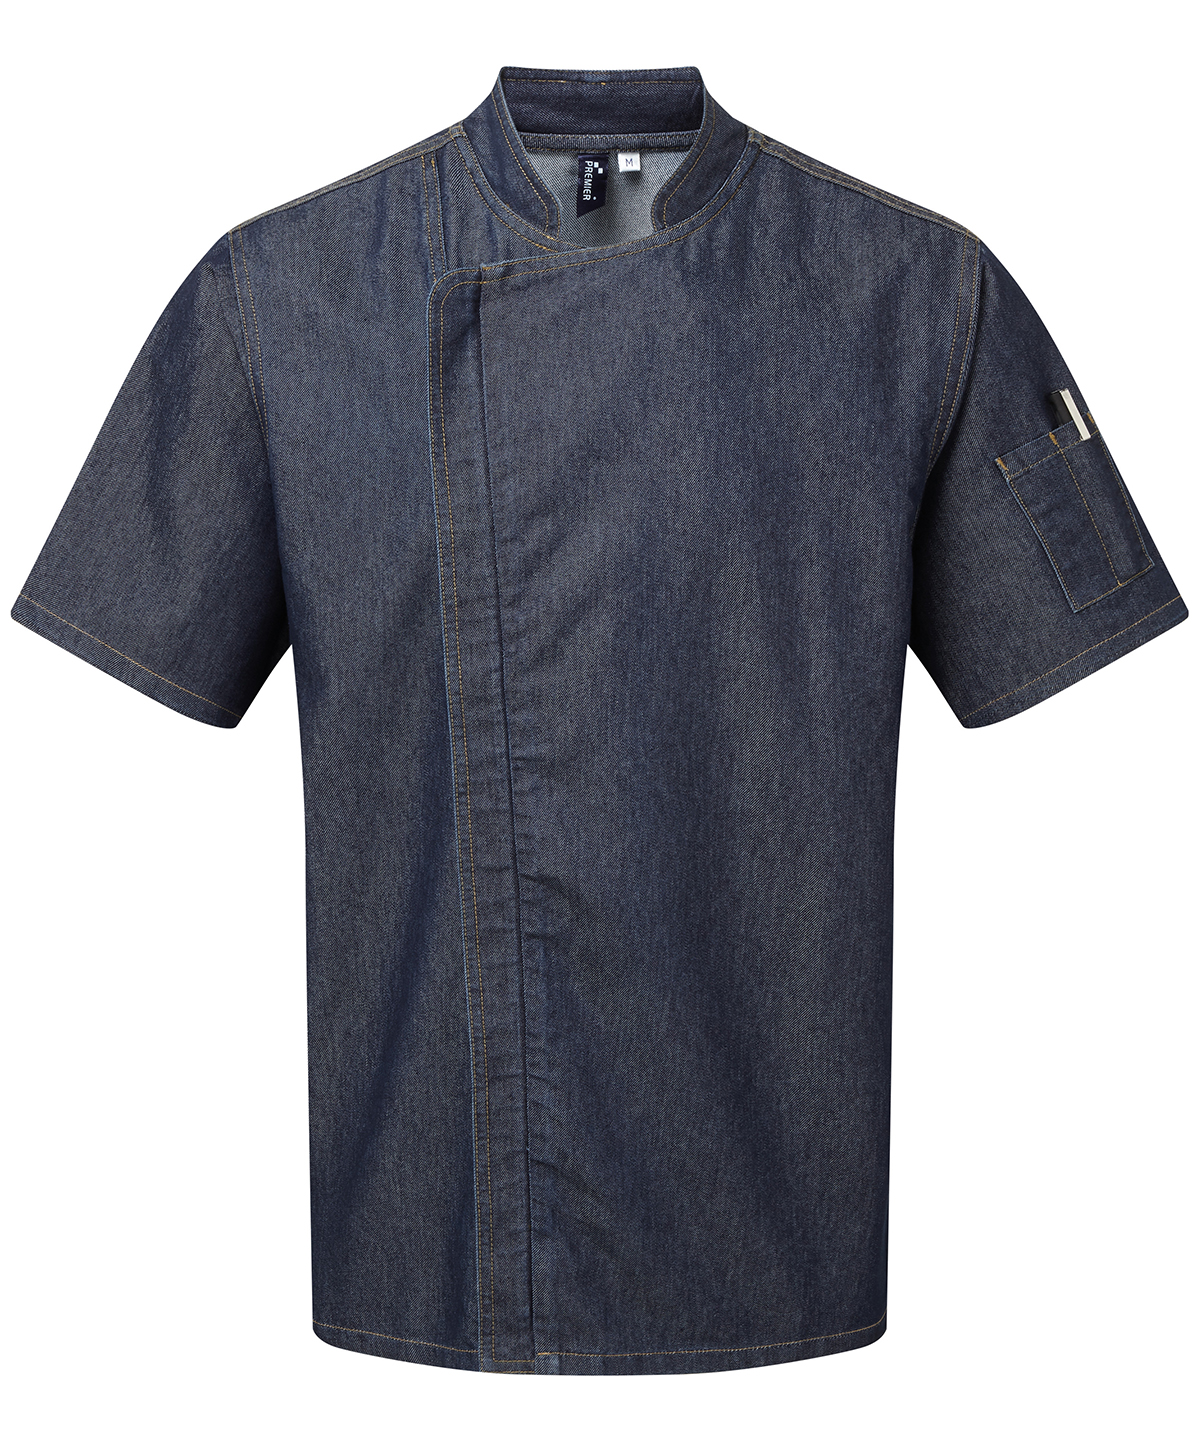 Chef'S Zip-Close Short Sleeve Jacket Indigo Denim Size 2XLarge